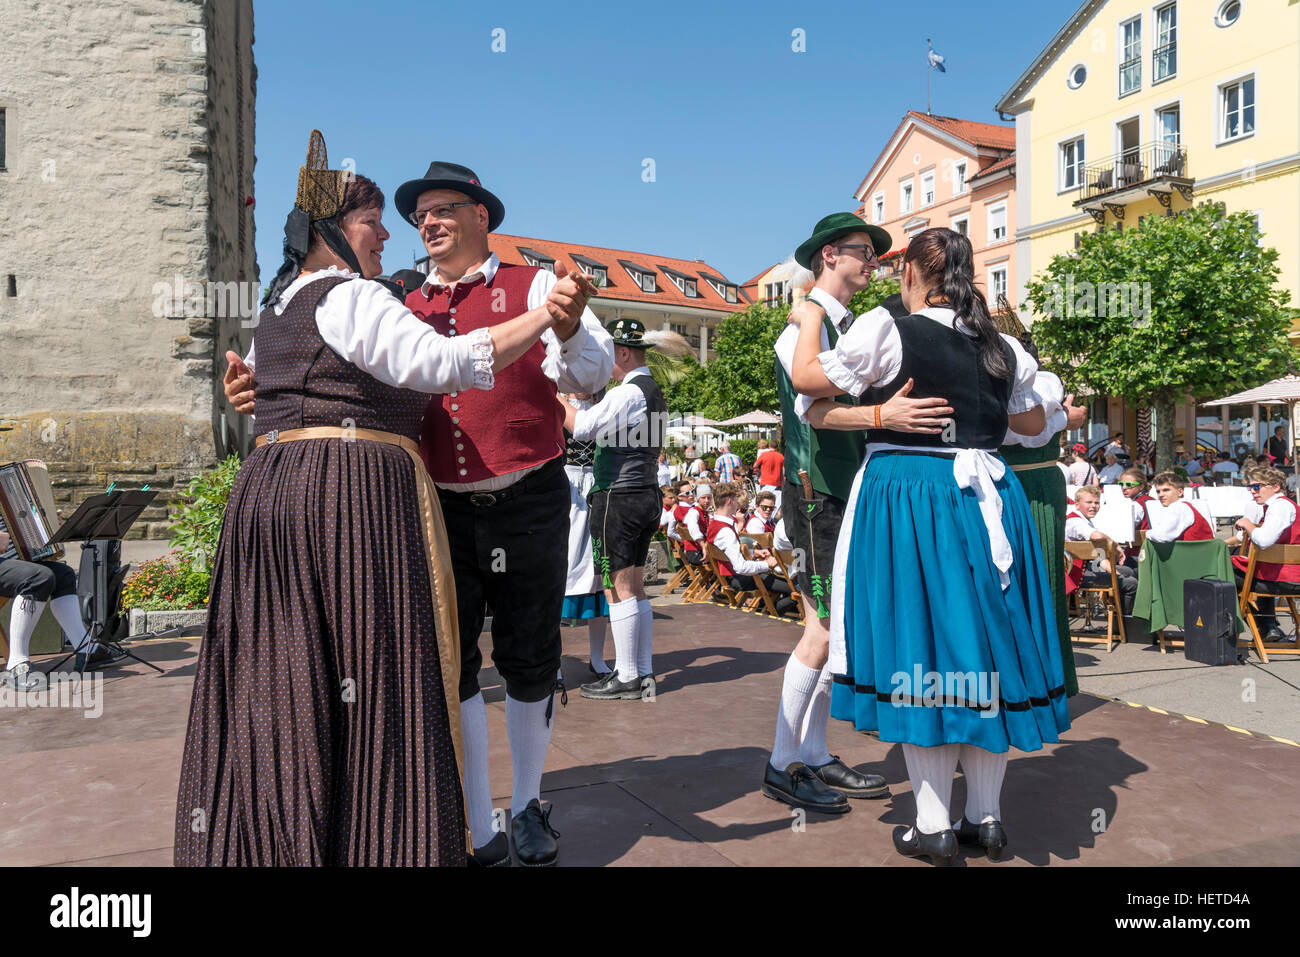 Grupo de danza folklórica bailando en trajes tradicionales, Lindau, el lago de Constanza, Baviera, Alemania, Europa Foto de stock